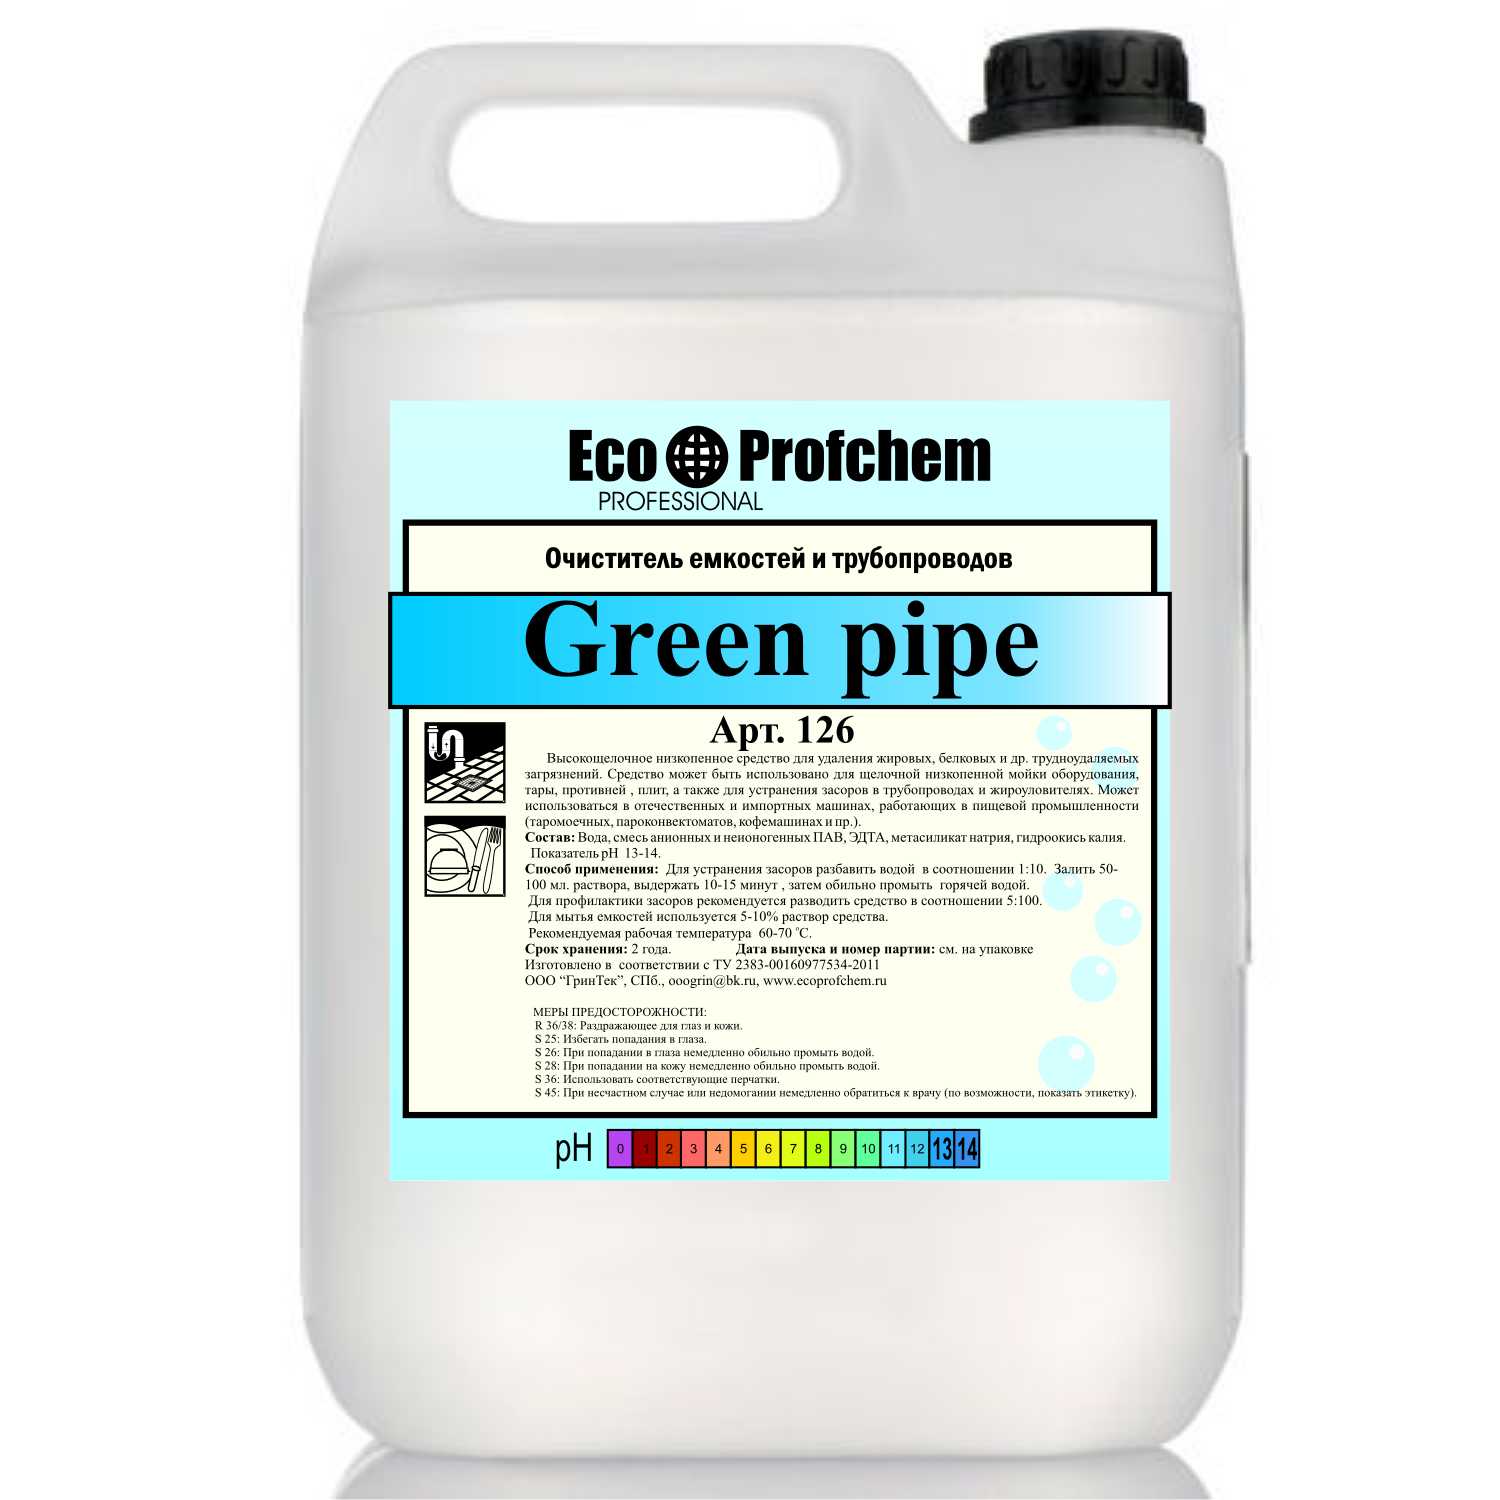 Green pipe - Очиститель емкостей и трубопроводов цена